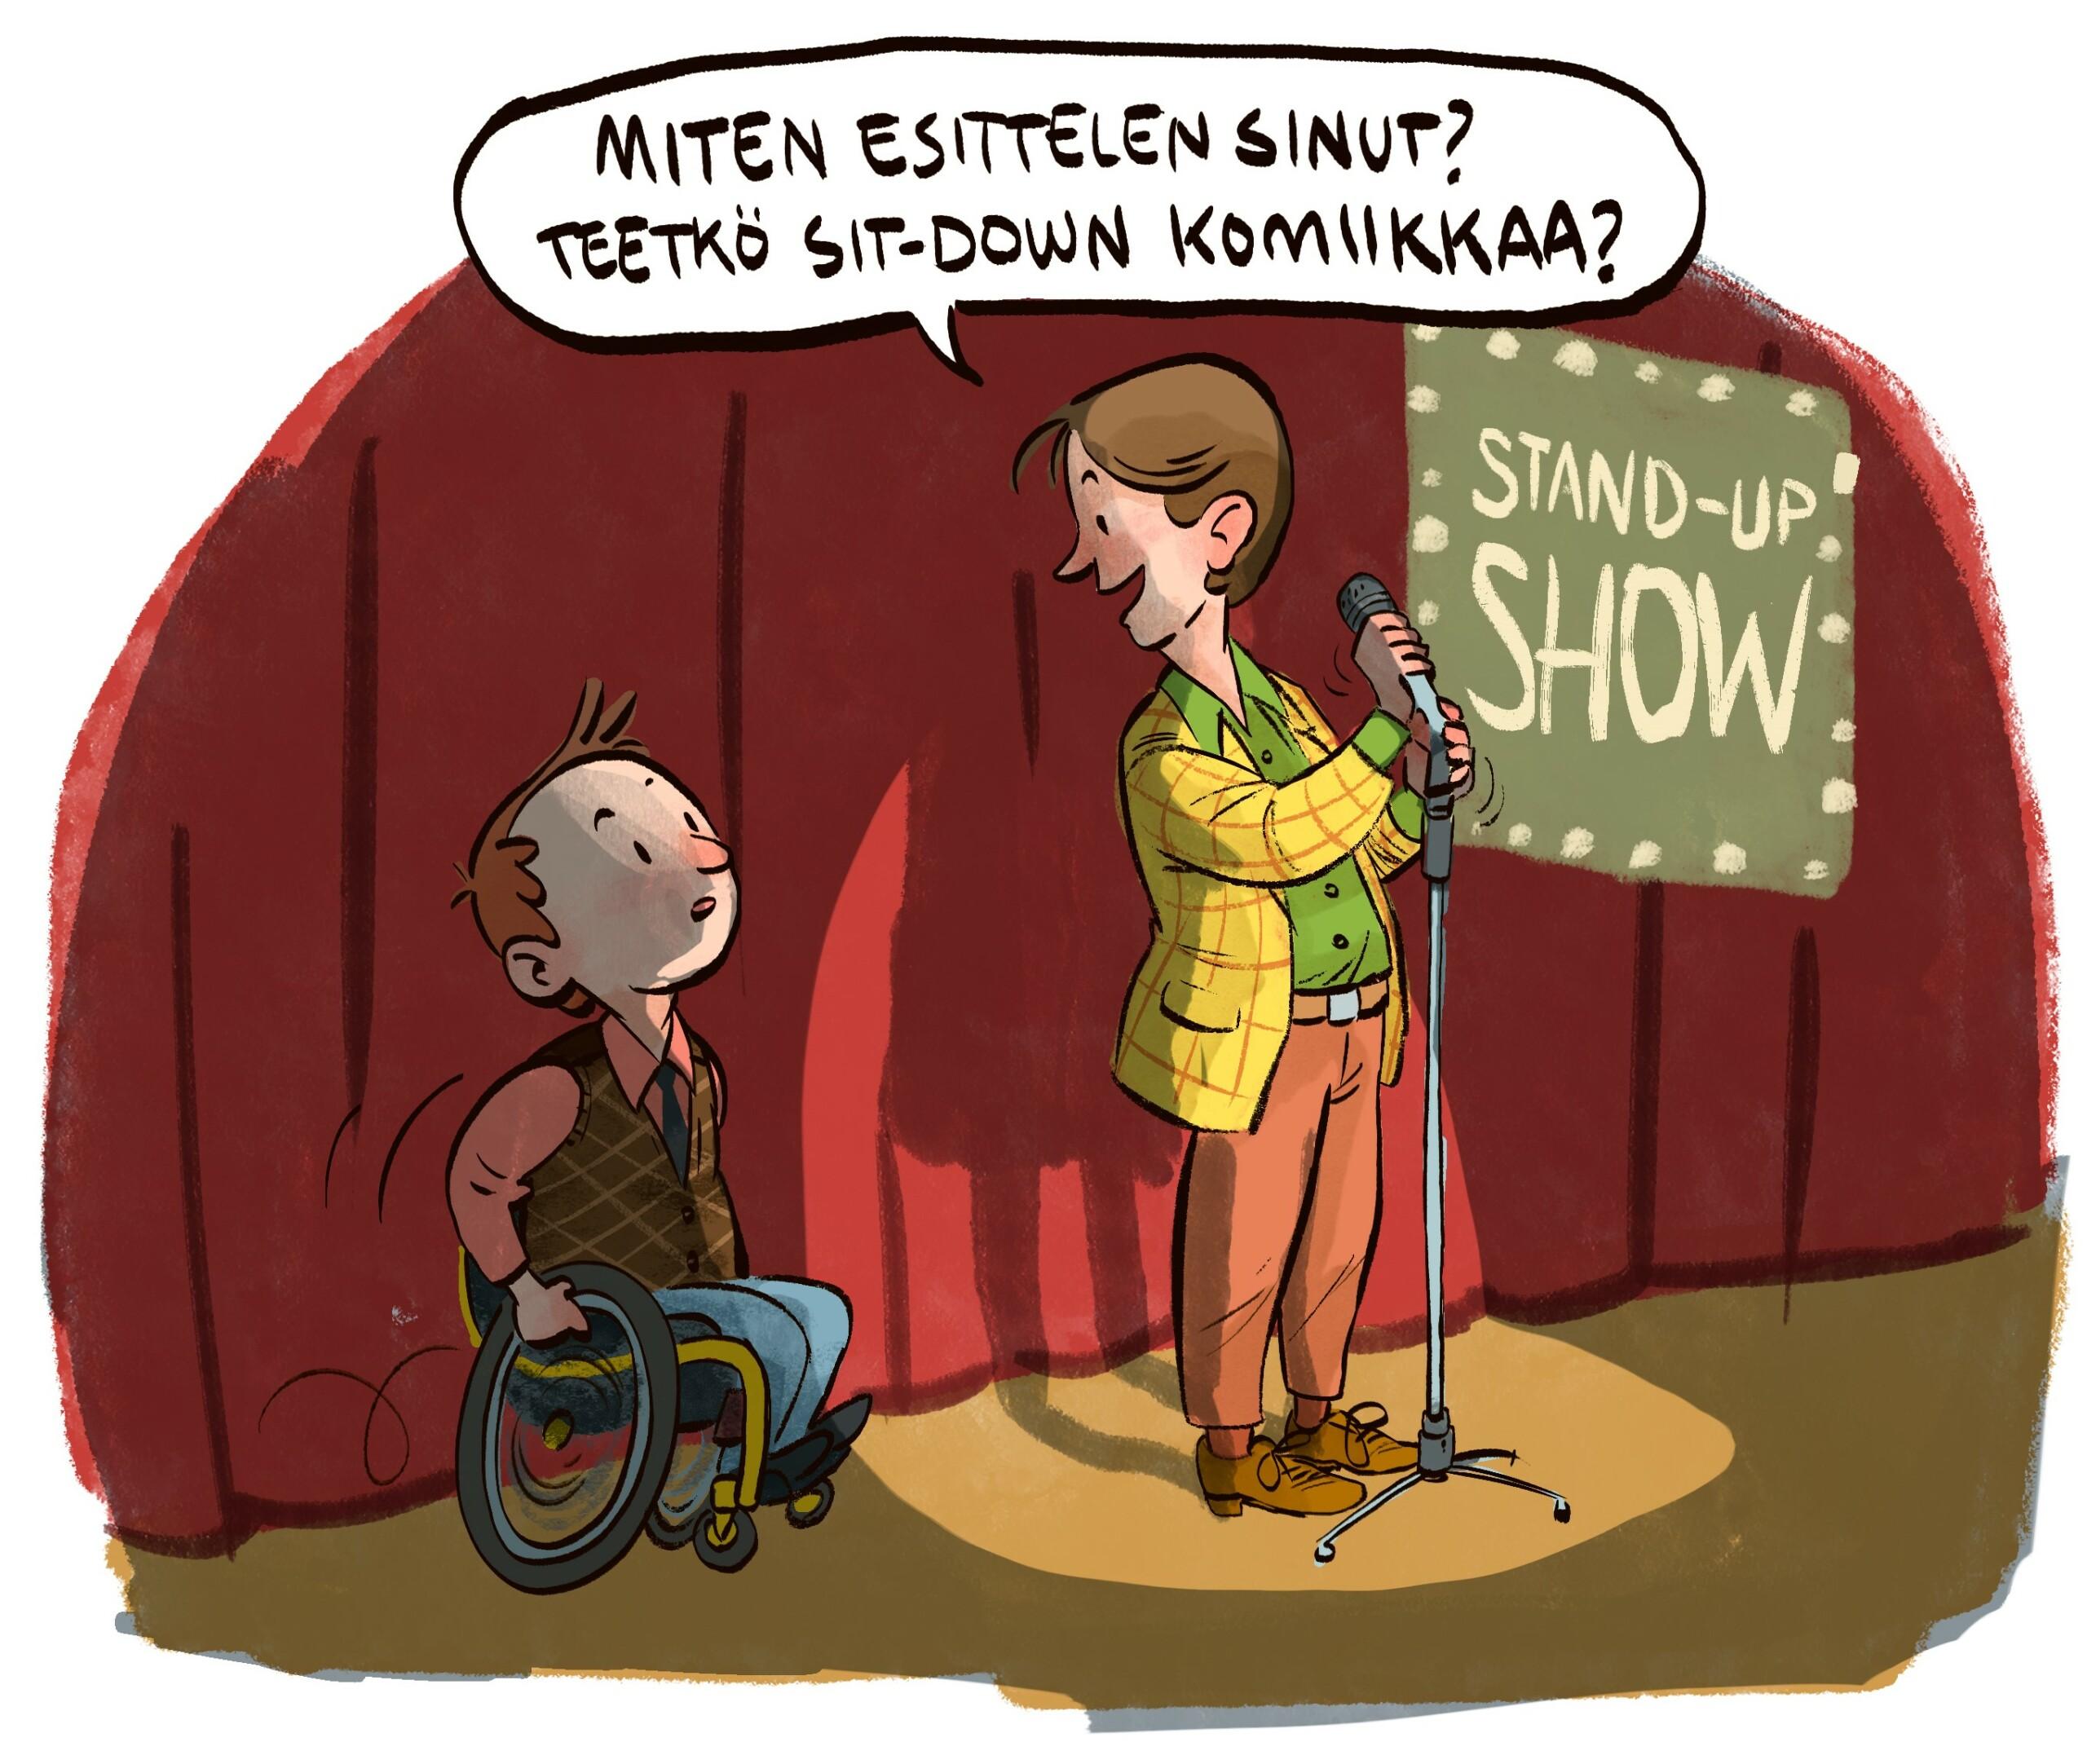 Piirroskuvassa stand up -koomikko kysyy pyörätuolissa olevalta mieheltä "Miten esittelen sinut? Teetkö sit-down komiikkaa?"